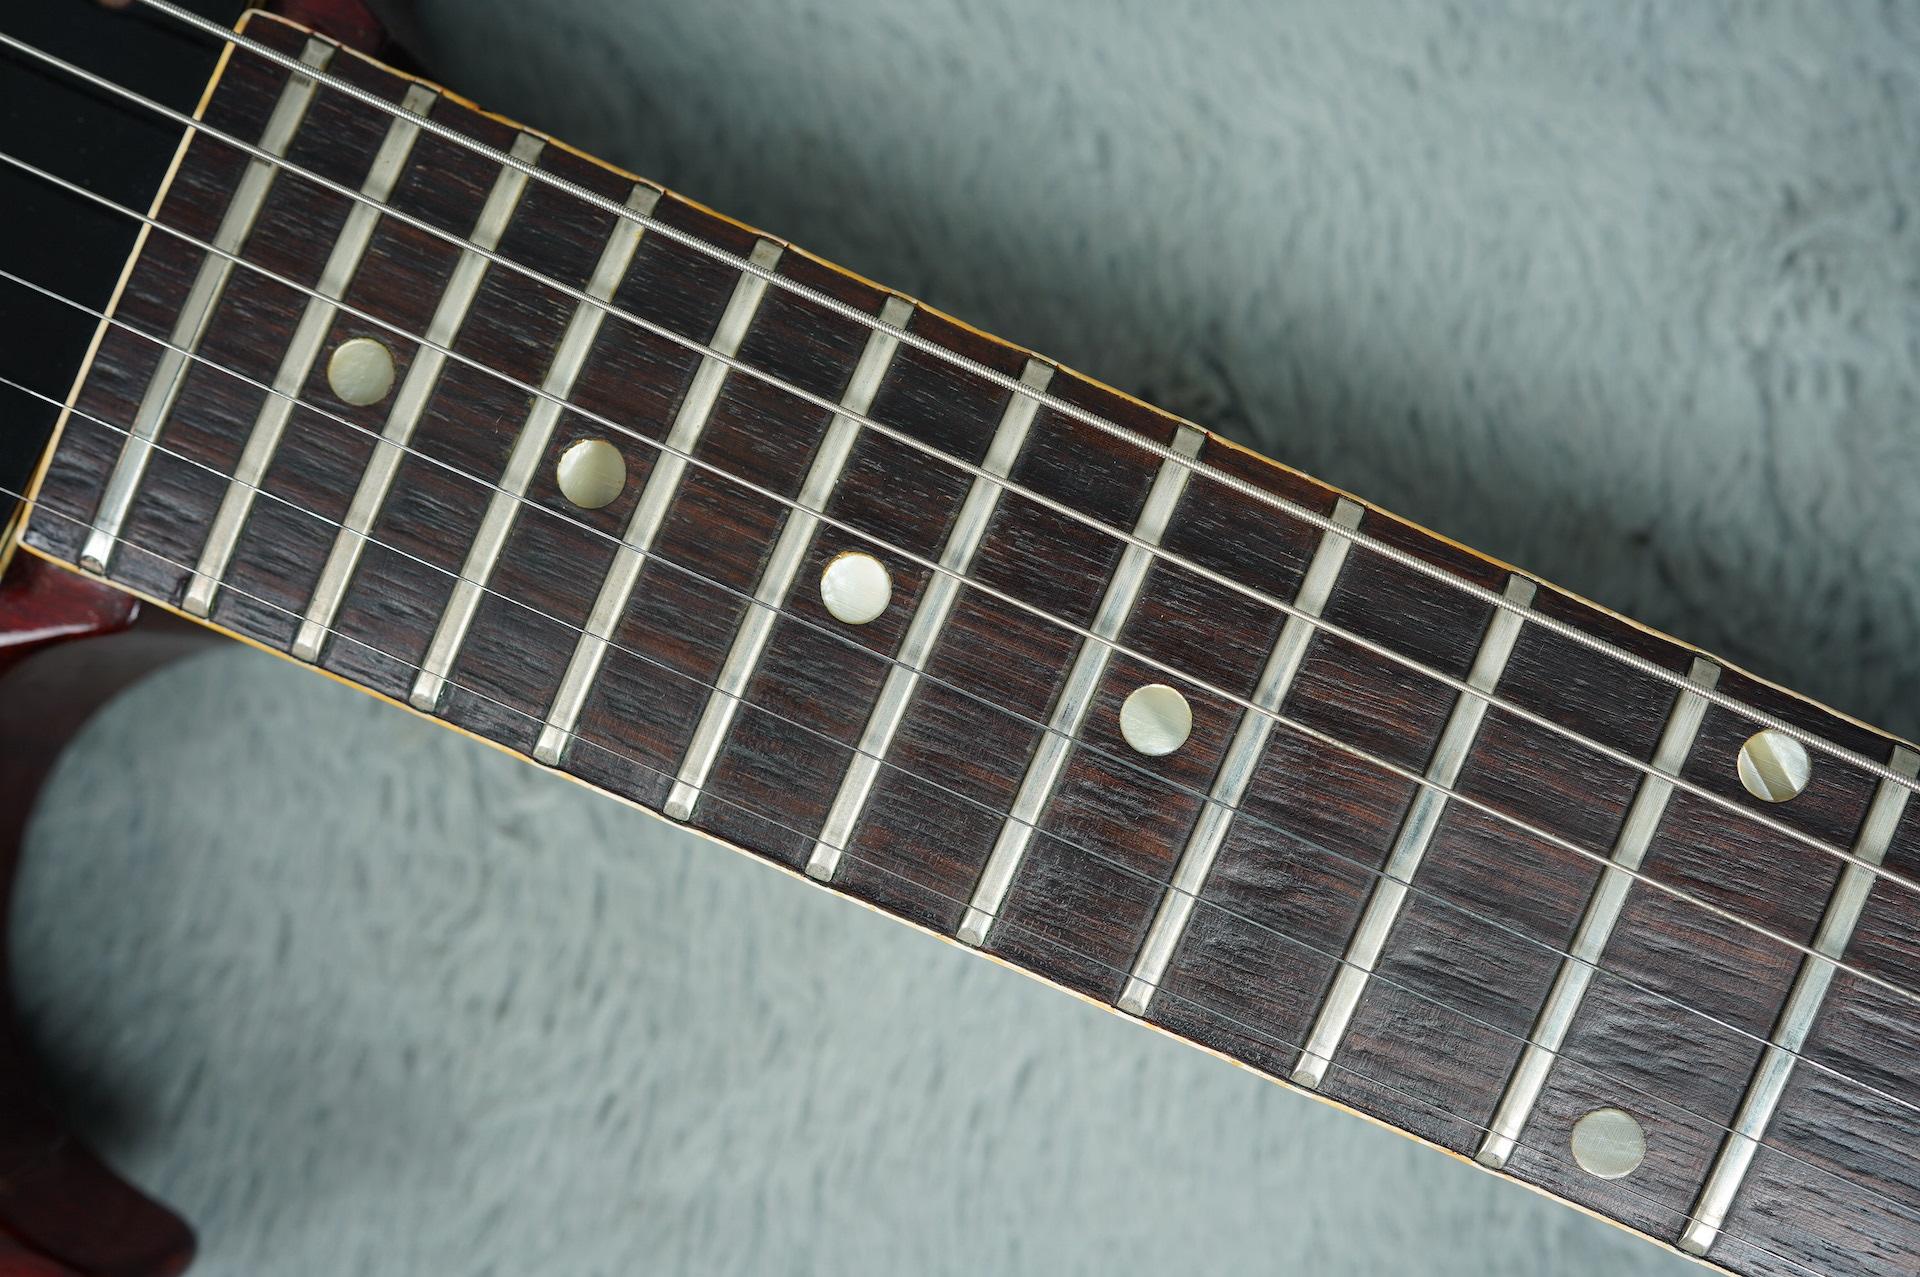 1965 Gibson SG Special